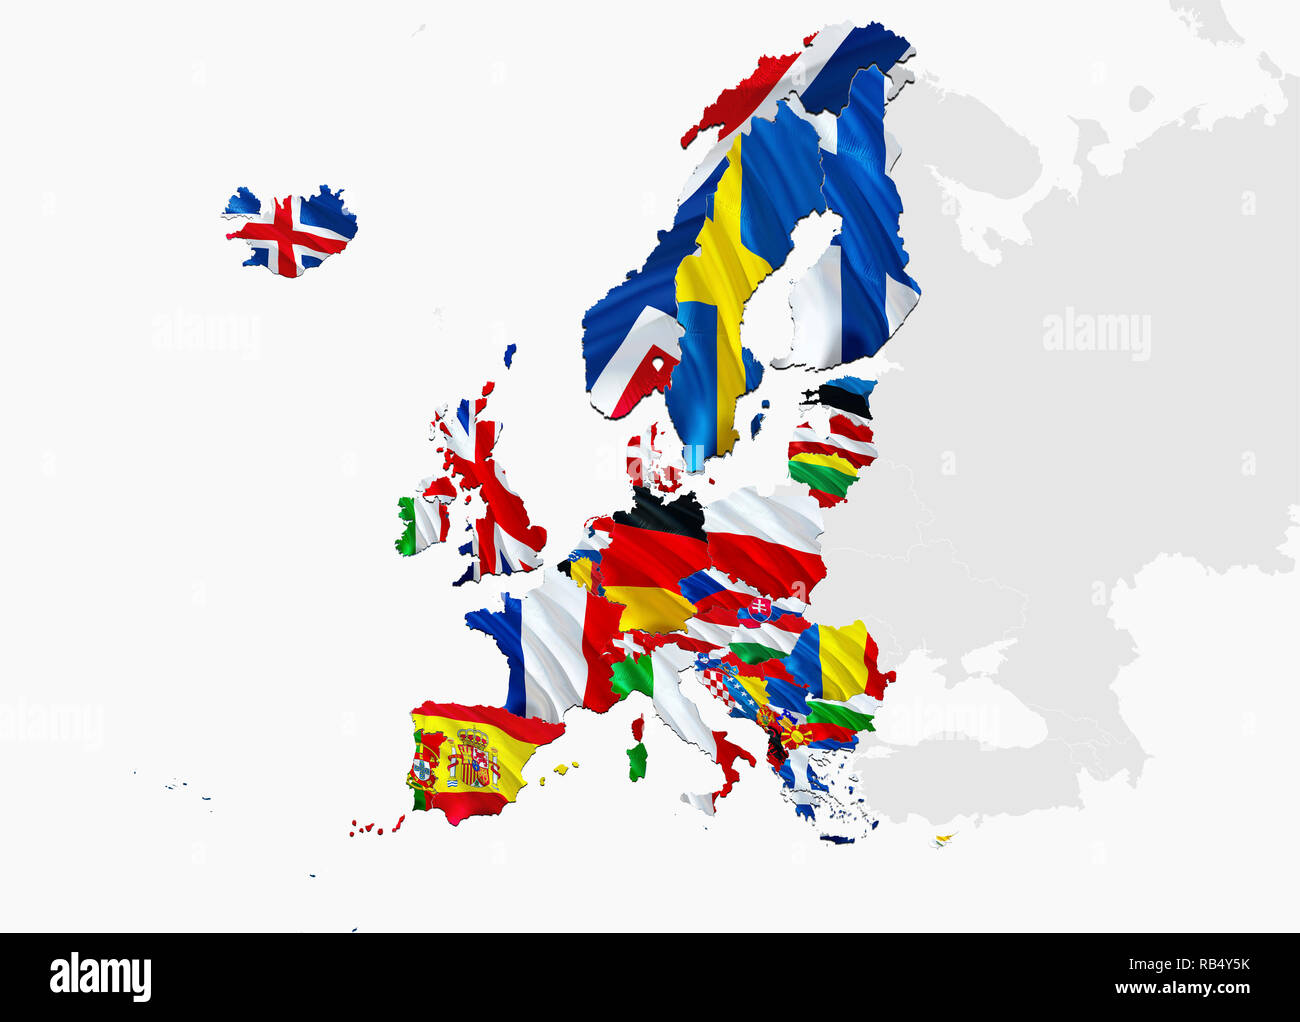 Flagge Karte Von Europa 3d Rendering Europa Karte Und Flagge Das Nationale Symbol Fur Europa Nationale Wehende Flagge Bunte Konzept 3d Muster Hintergrund Downl Stockfotografie Alamy